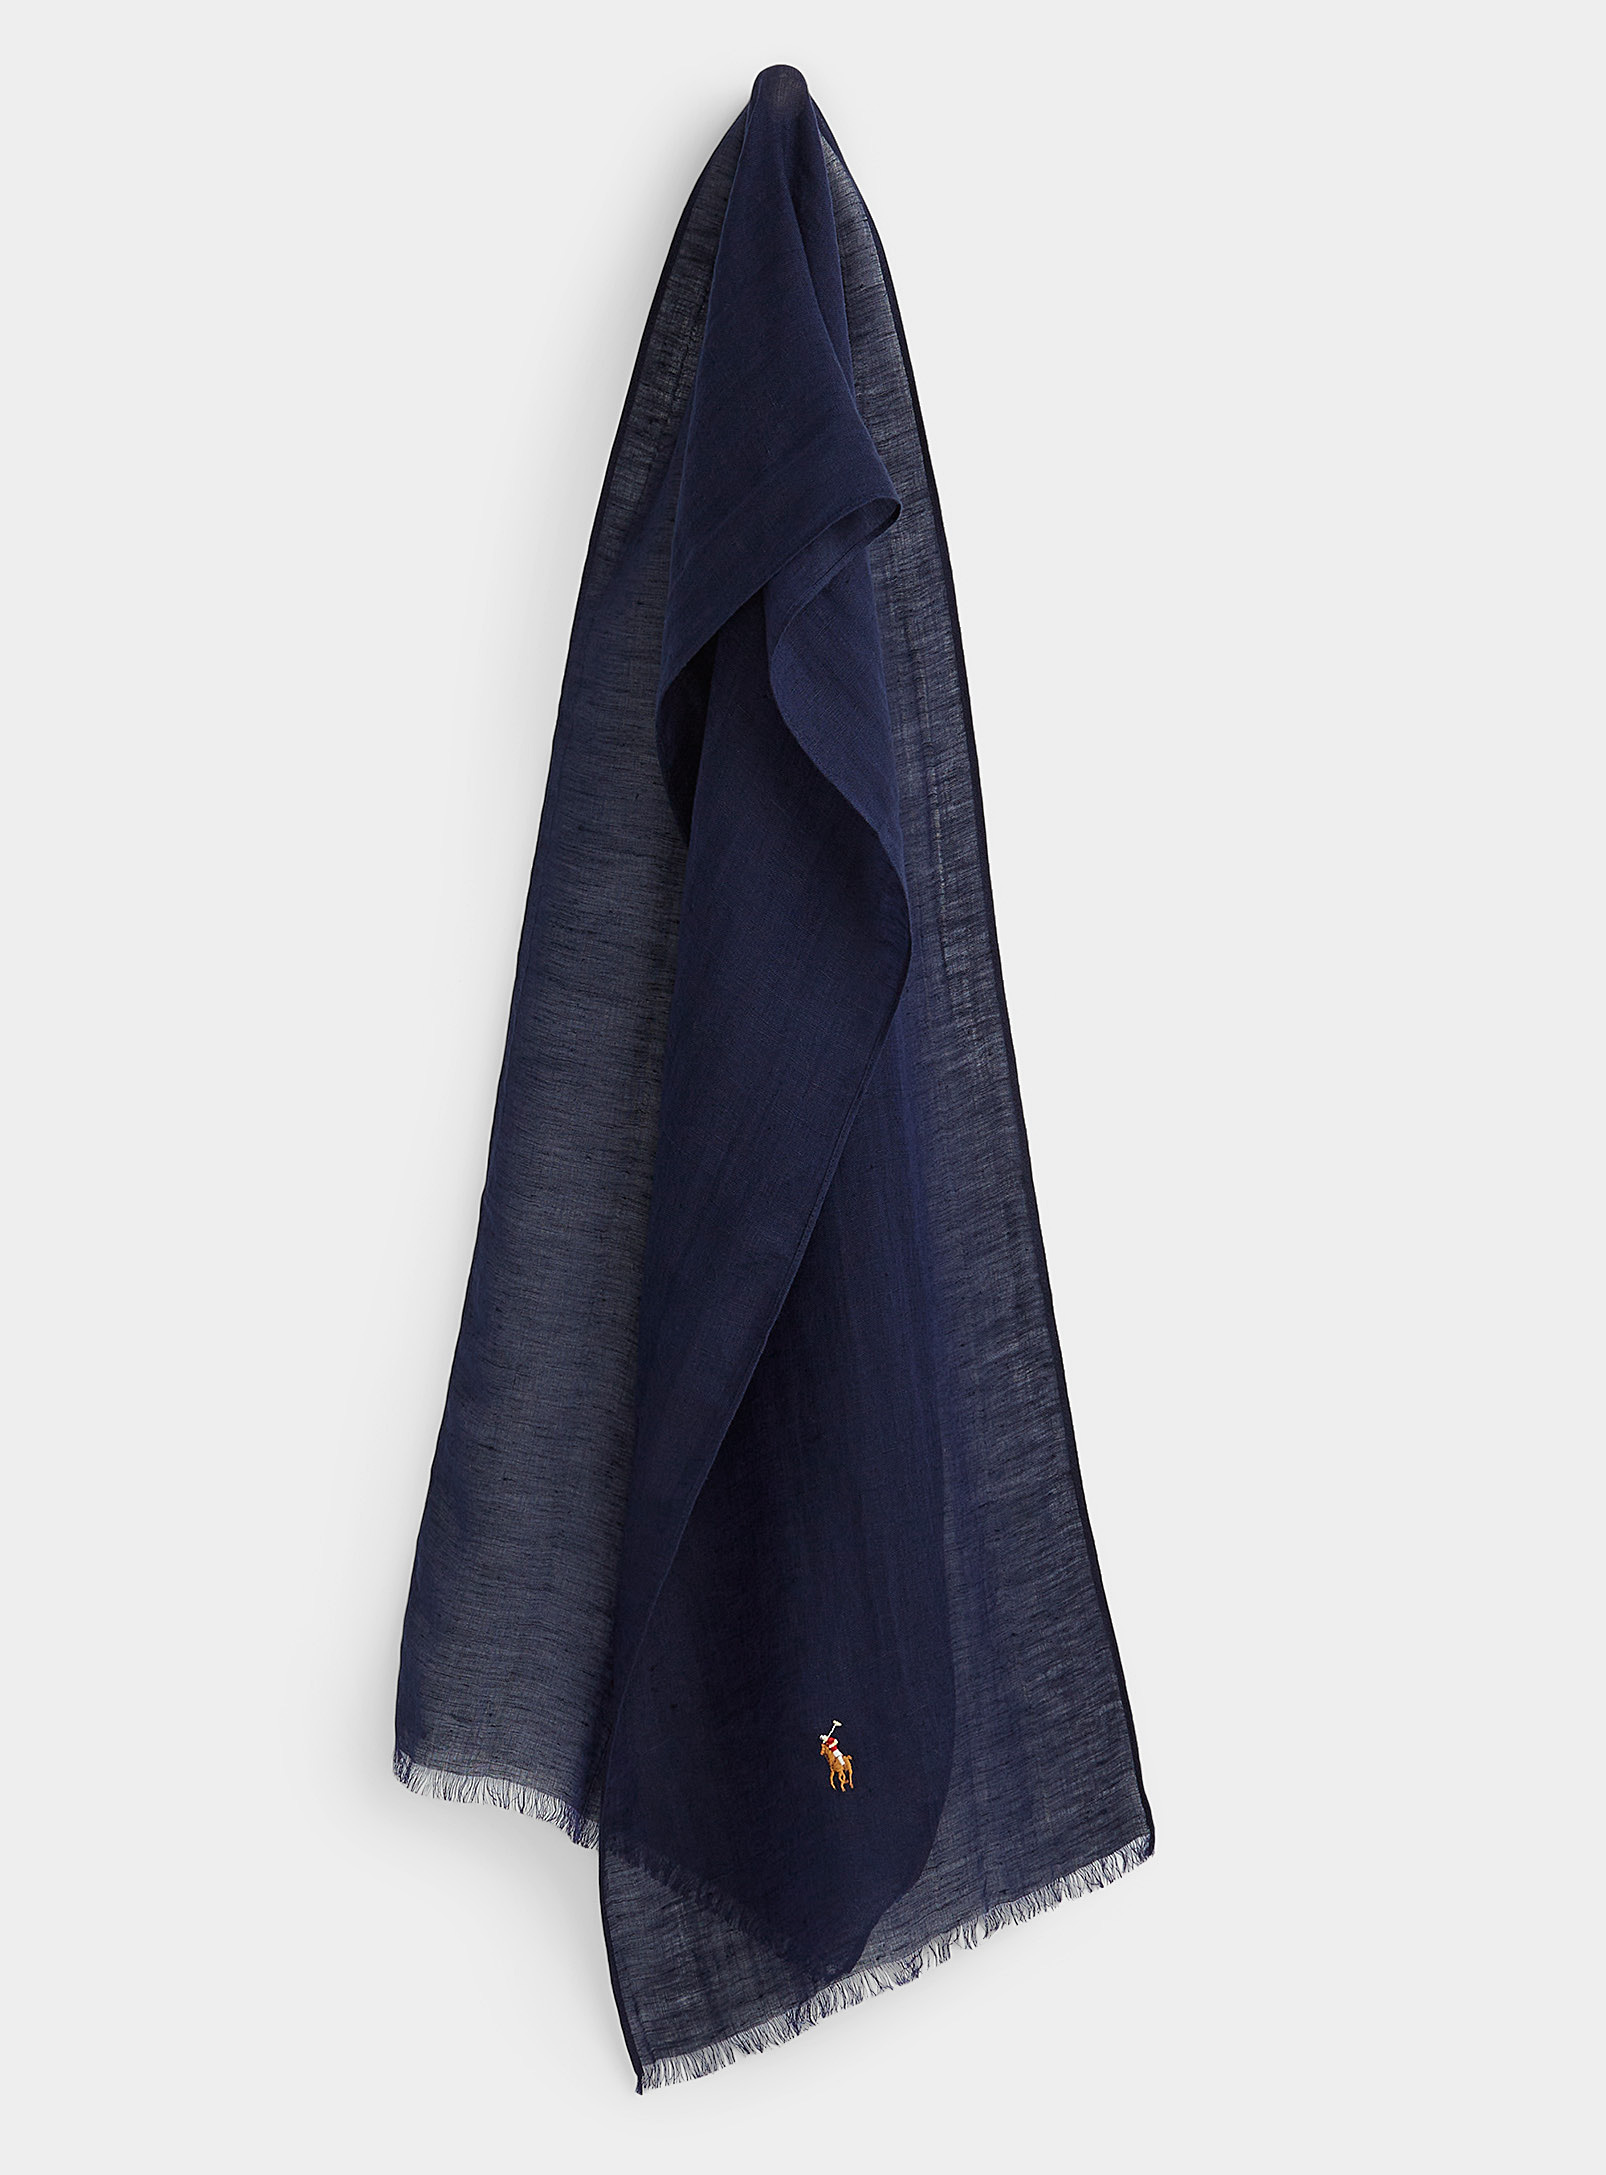 Polo Ralph Lauren - Men's Lightweight linen-modal scarf